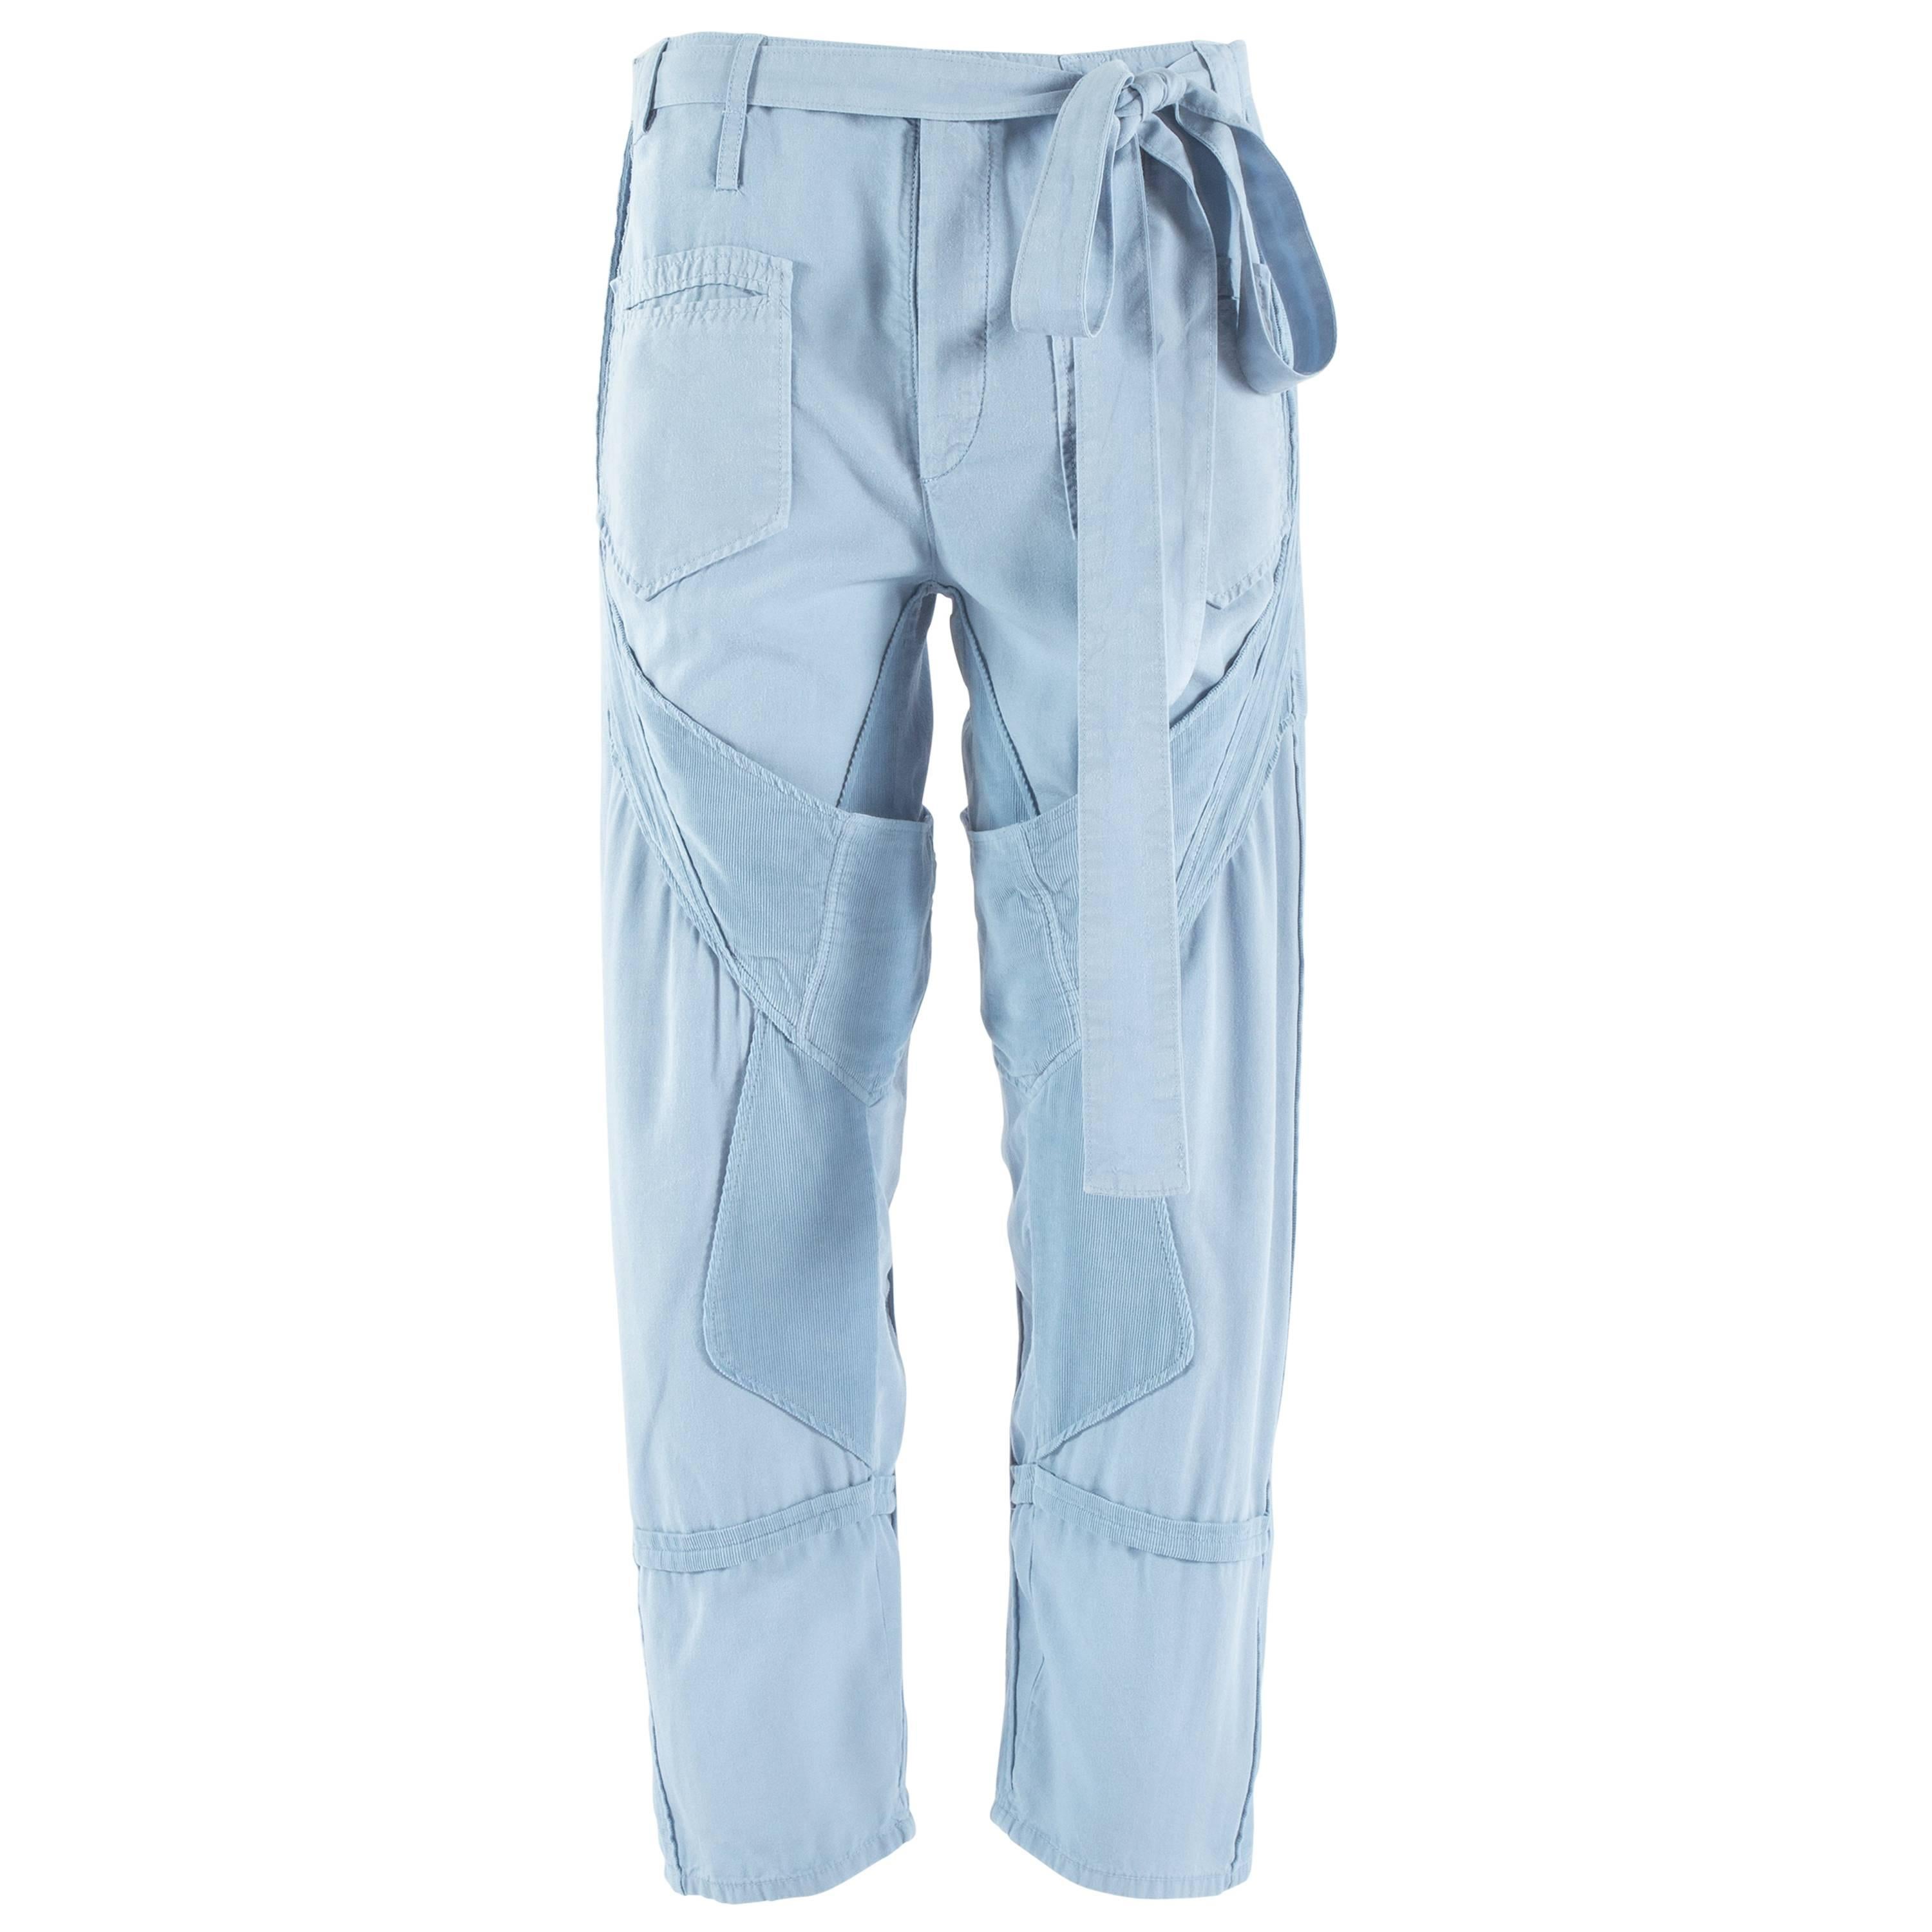 Balenciaga by Nicolas Ghesquière blue cotton and corduroy cargo pants, ss 2002